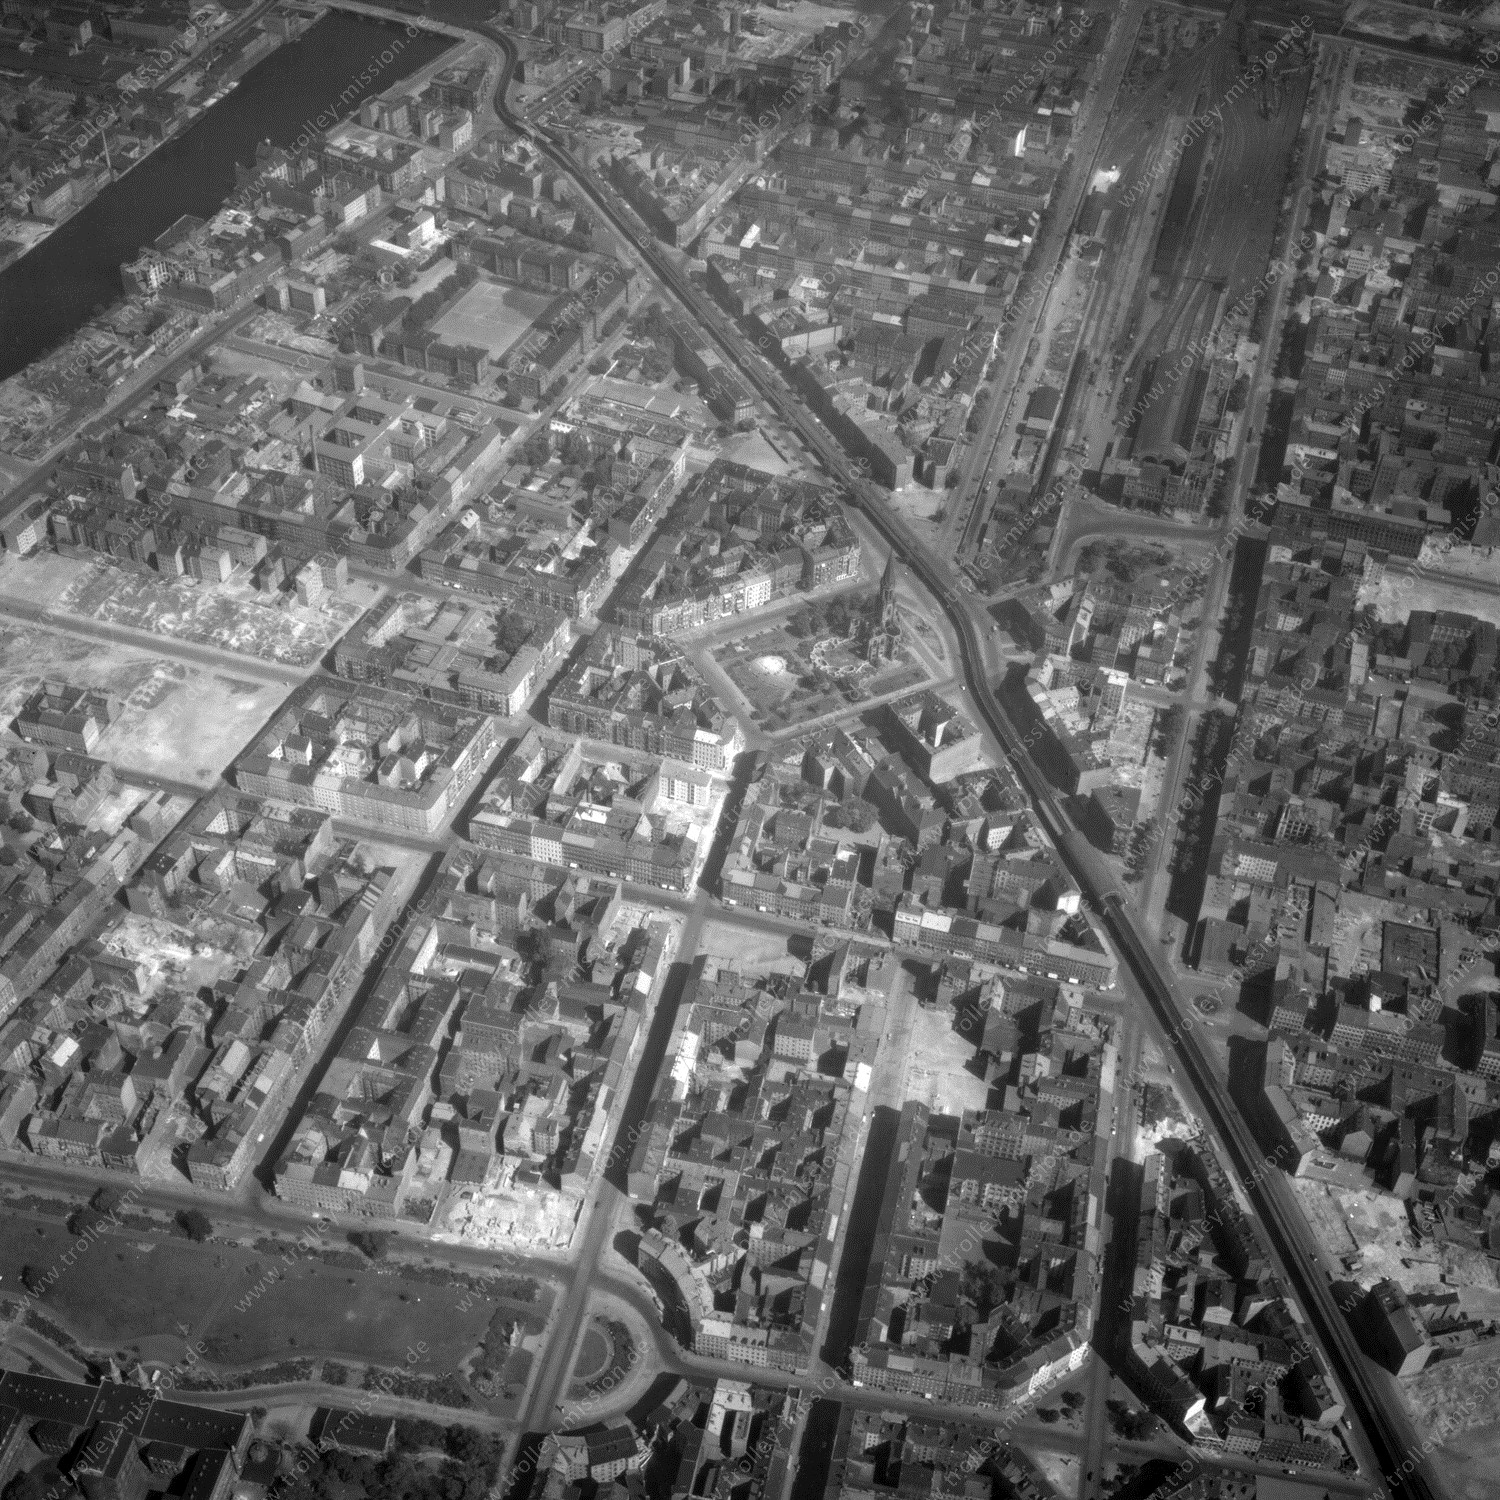 Alte Fotos und Luftbilder von Berlin - Luftbildaufnahme Nr. 08 - Historische Luftaufnahmen von West-Berlin aus dem Jahr 1954 - Flugstrecke Mike